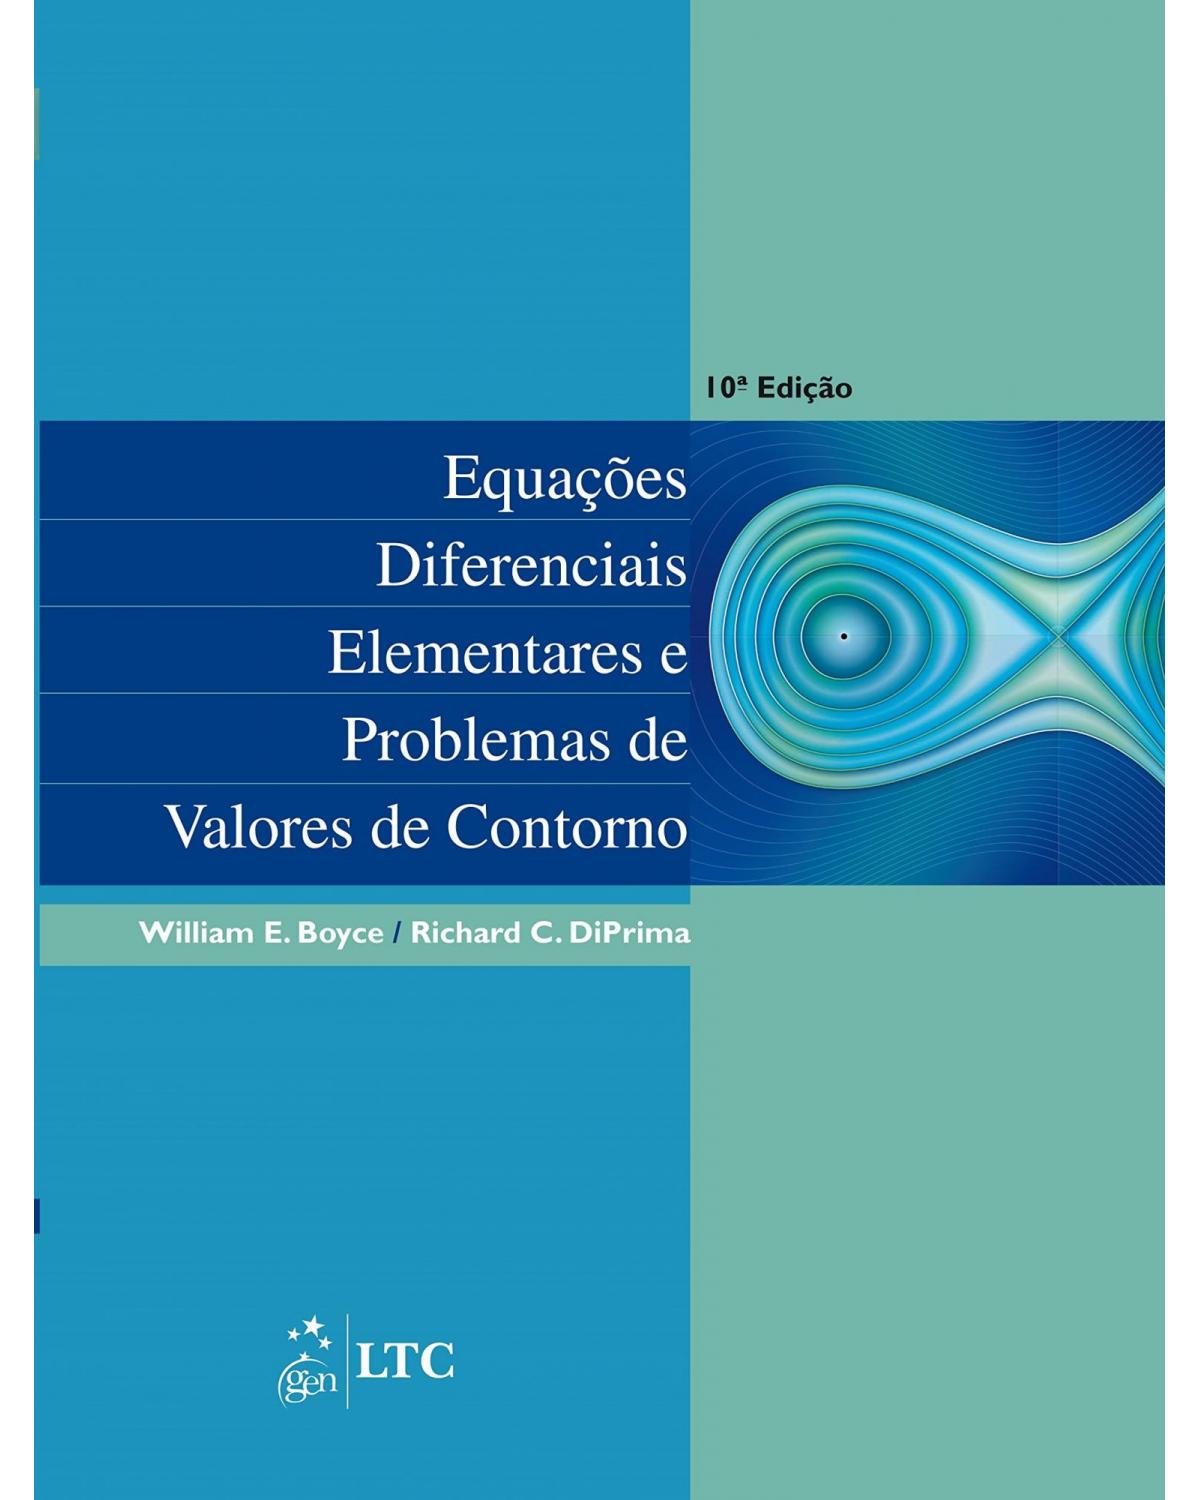 Equações diferenciais elementares e problemas de valores de contorno - 10ª Edição | 2015